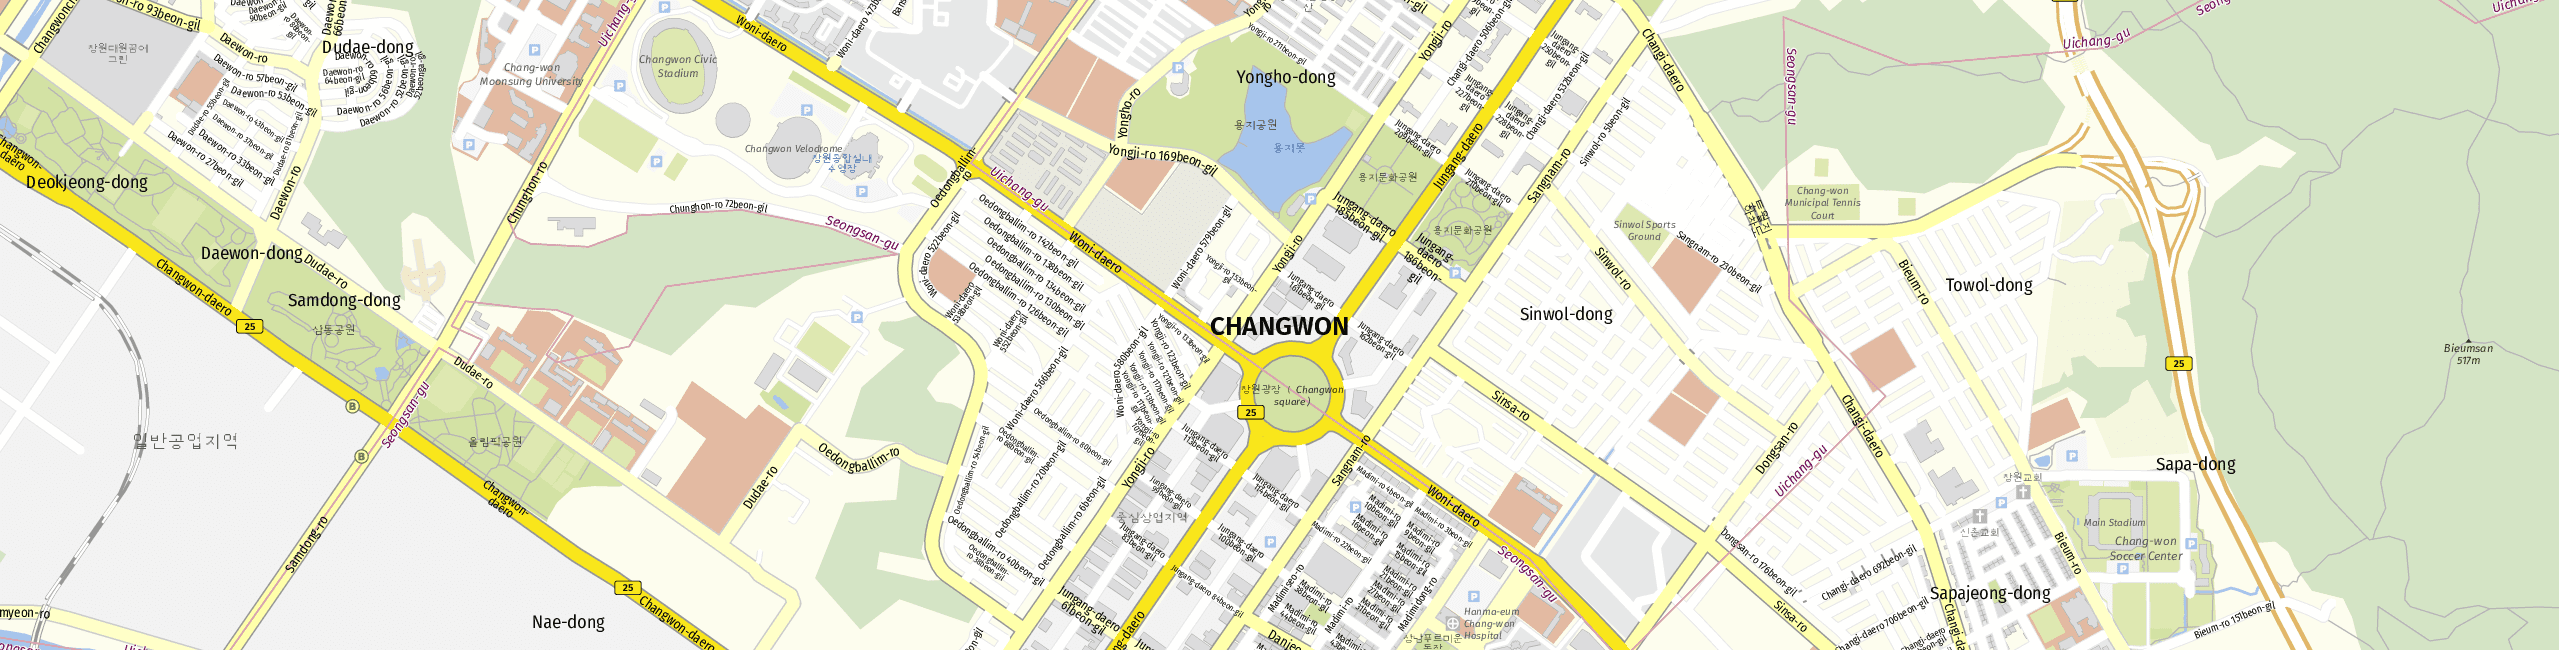 Stadtplan Changwon zum Downloaden.